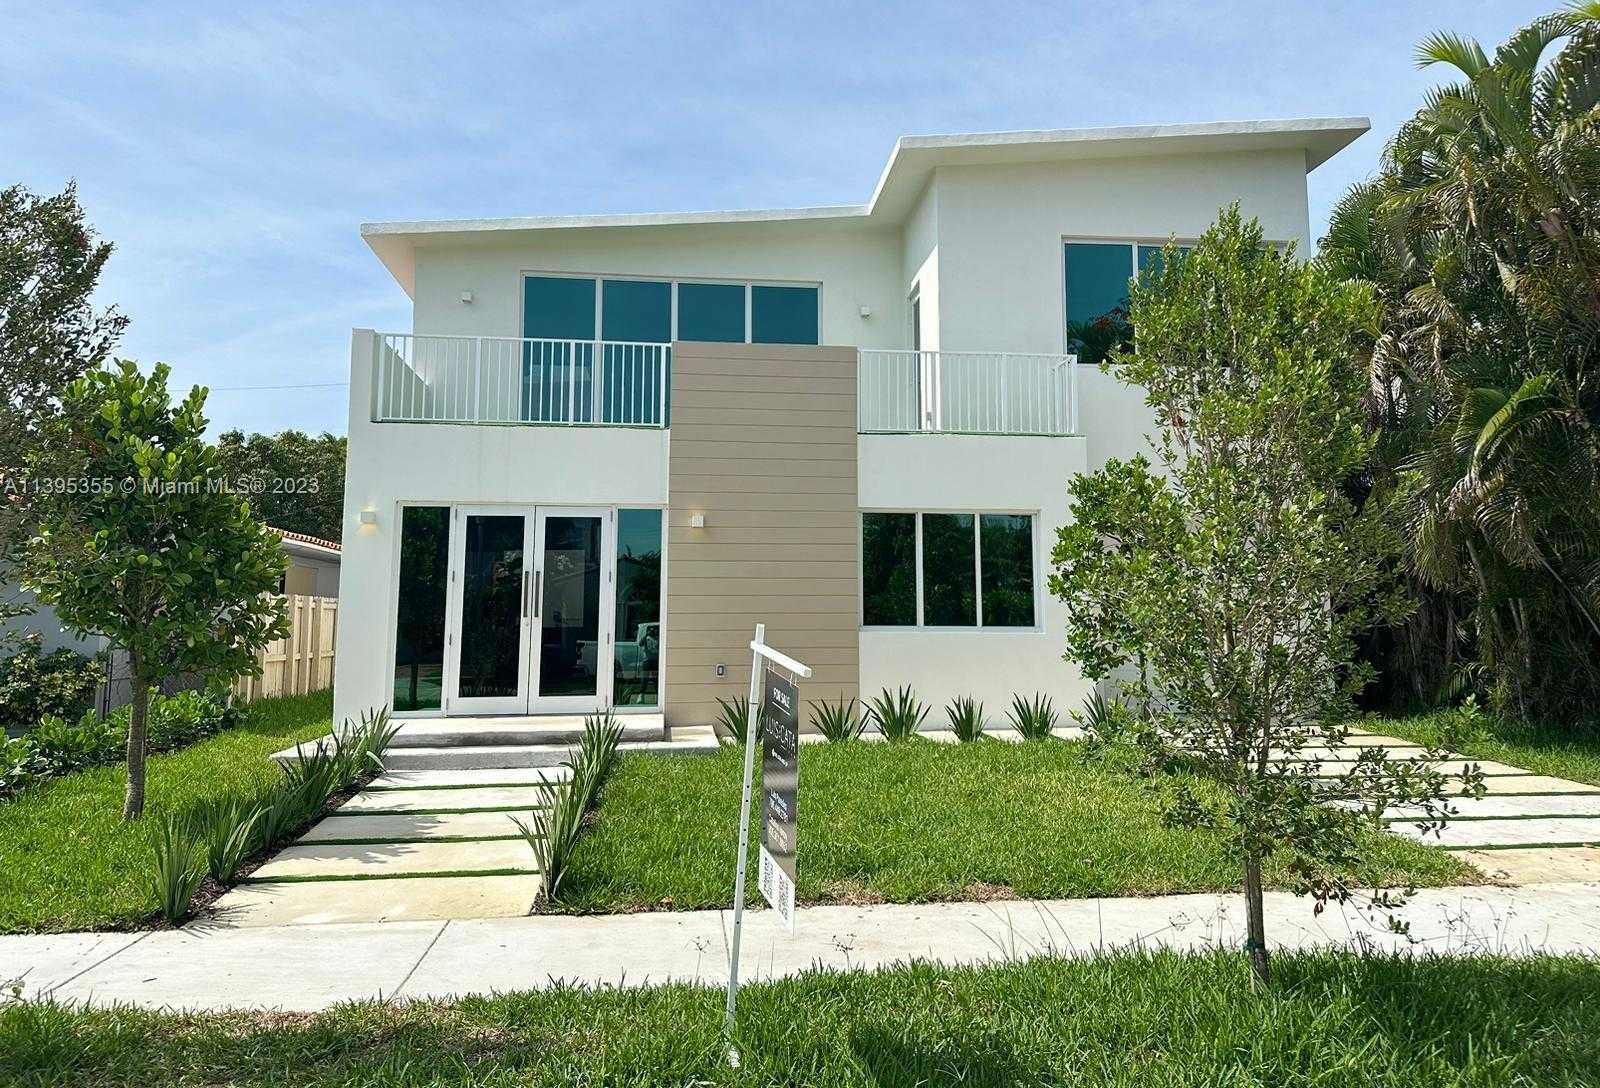 View Miami, FL 33145 house